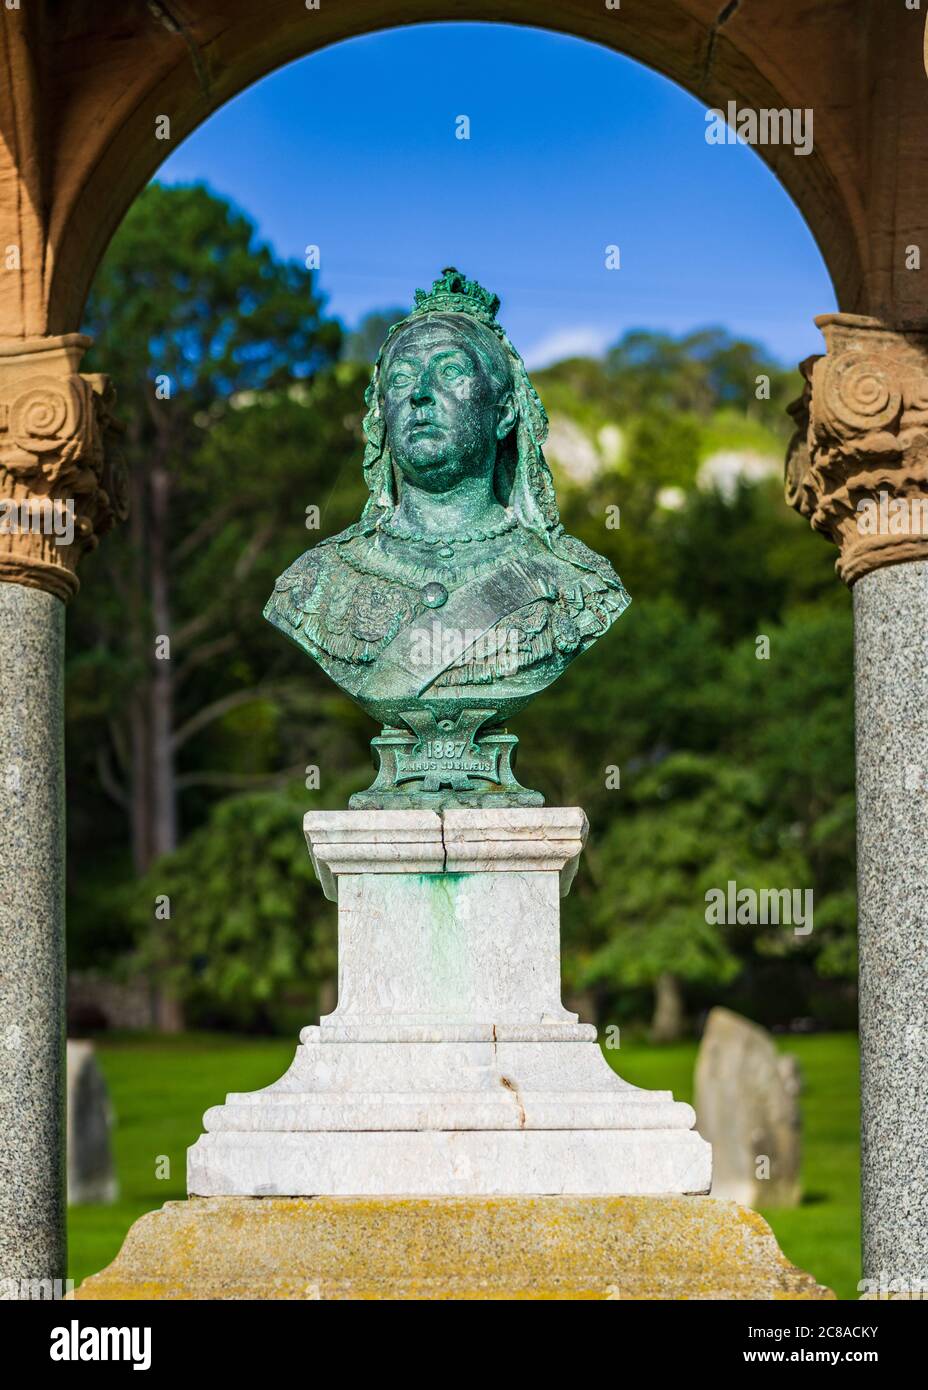 Queen Victoria buste et Monument dans Happy Valley Llandudno N pays de Galles. Érigé pour commémorer le Jubilé de son règne en 1887. Sculpteur Horace Montford. Banque D'Images